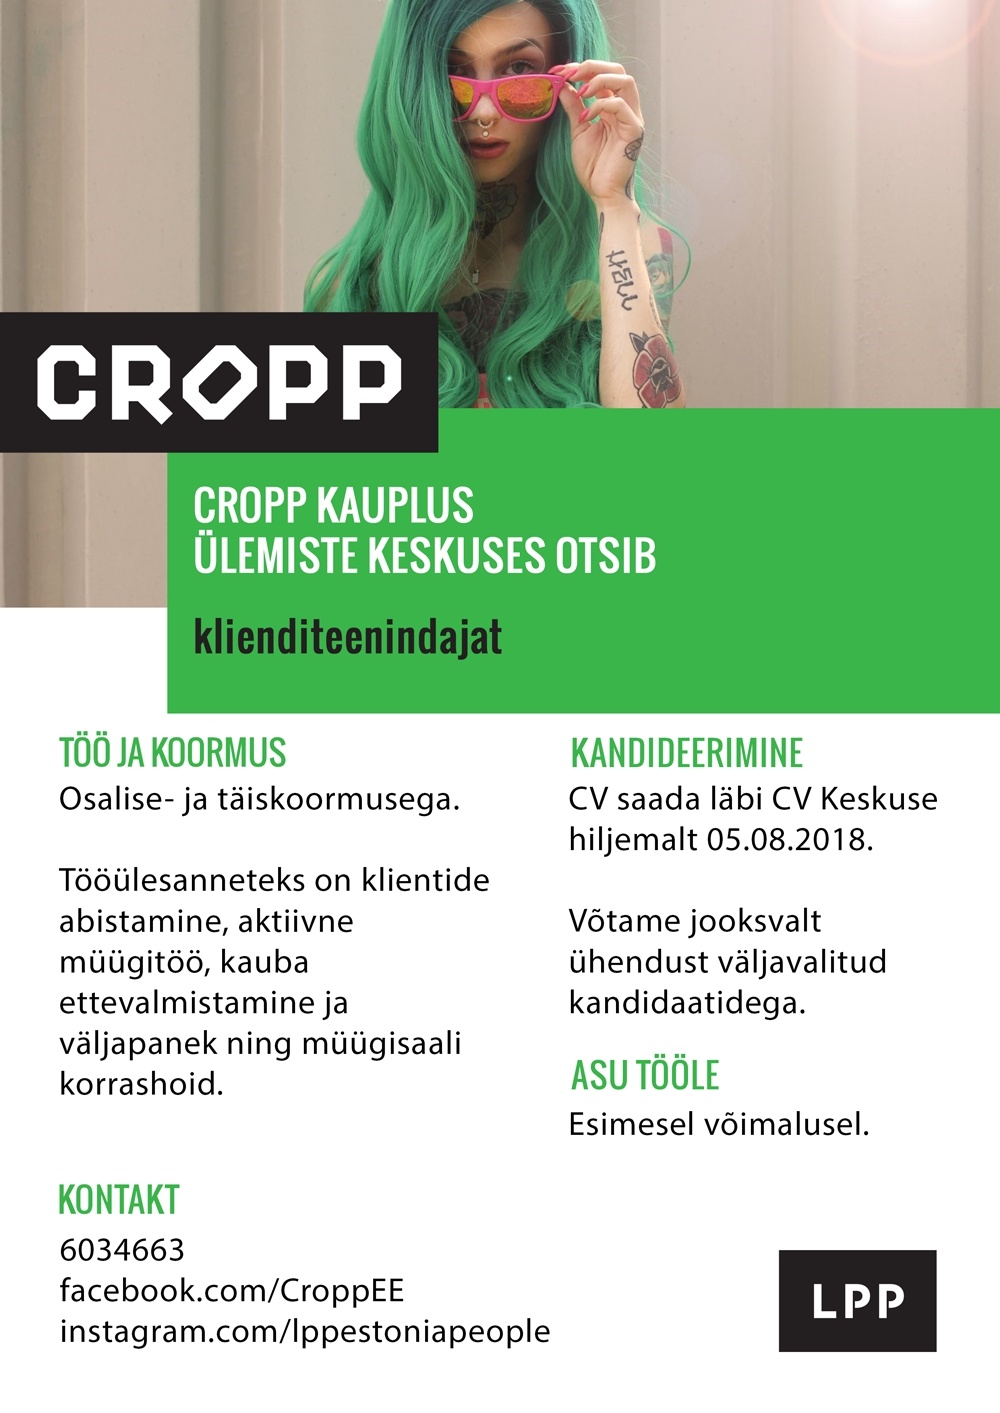 LPP Estonia OÜ Klienditeenindaja (osaline- või täiskoormus) CROPP kauplusesse Ülemiste keskuses